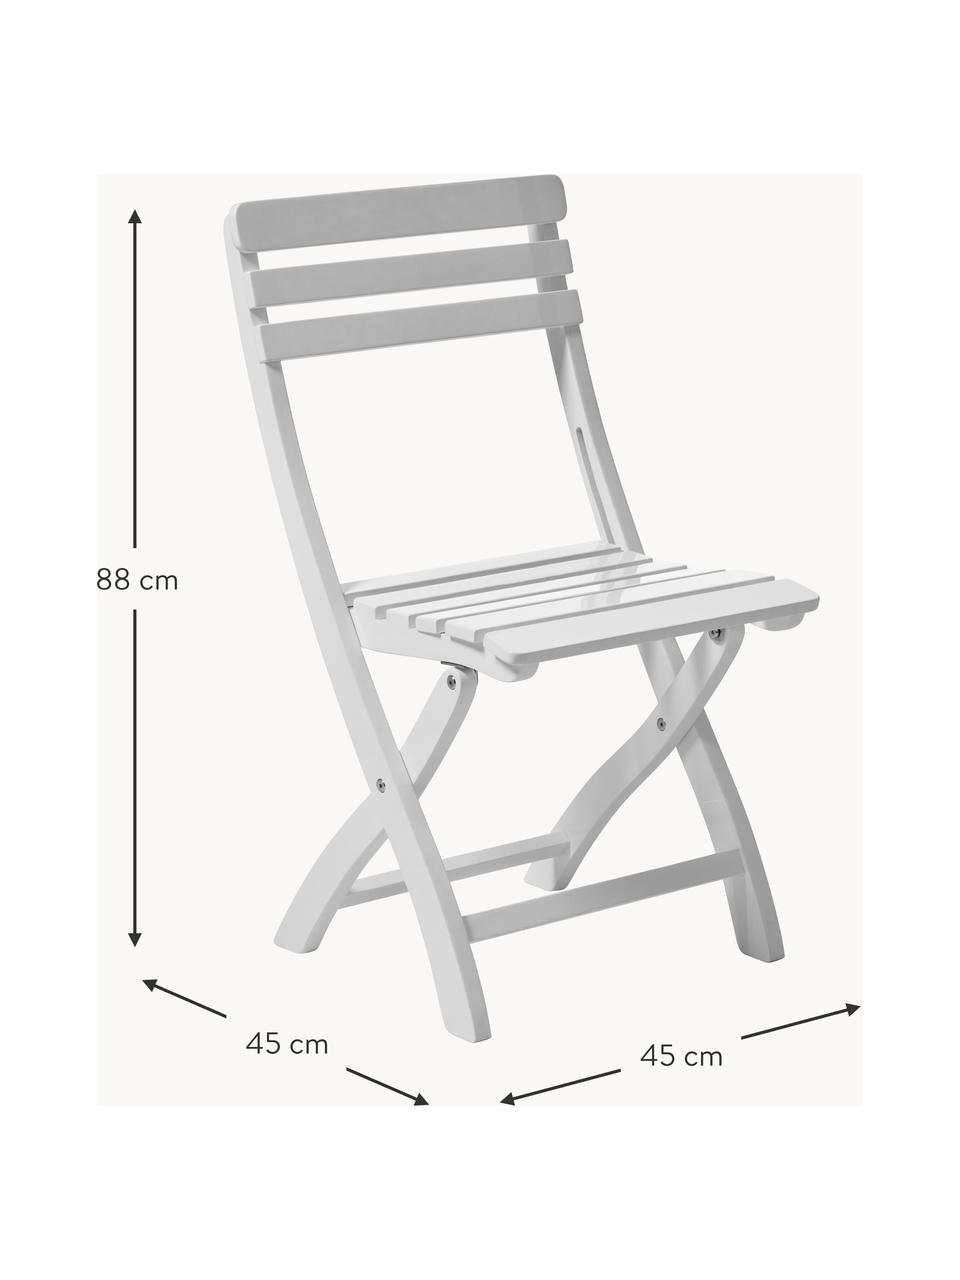 Chaise de jardin en bois d'acajou Clarish, Acajou, laqué
Certifié V-Legal, Blanc, larg. 45 x haut. 88 cm